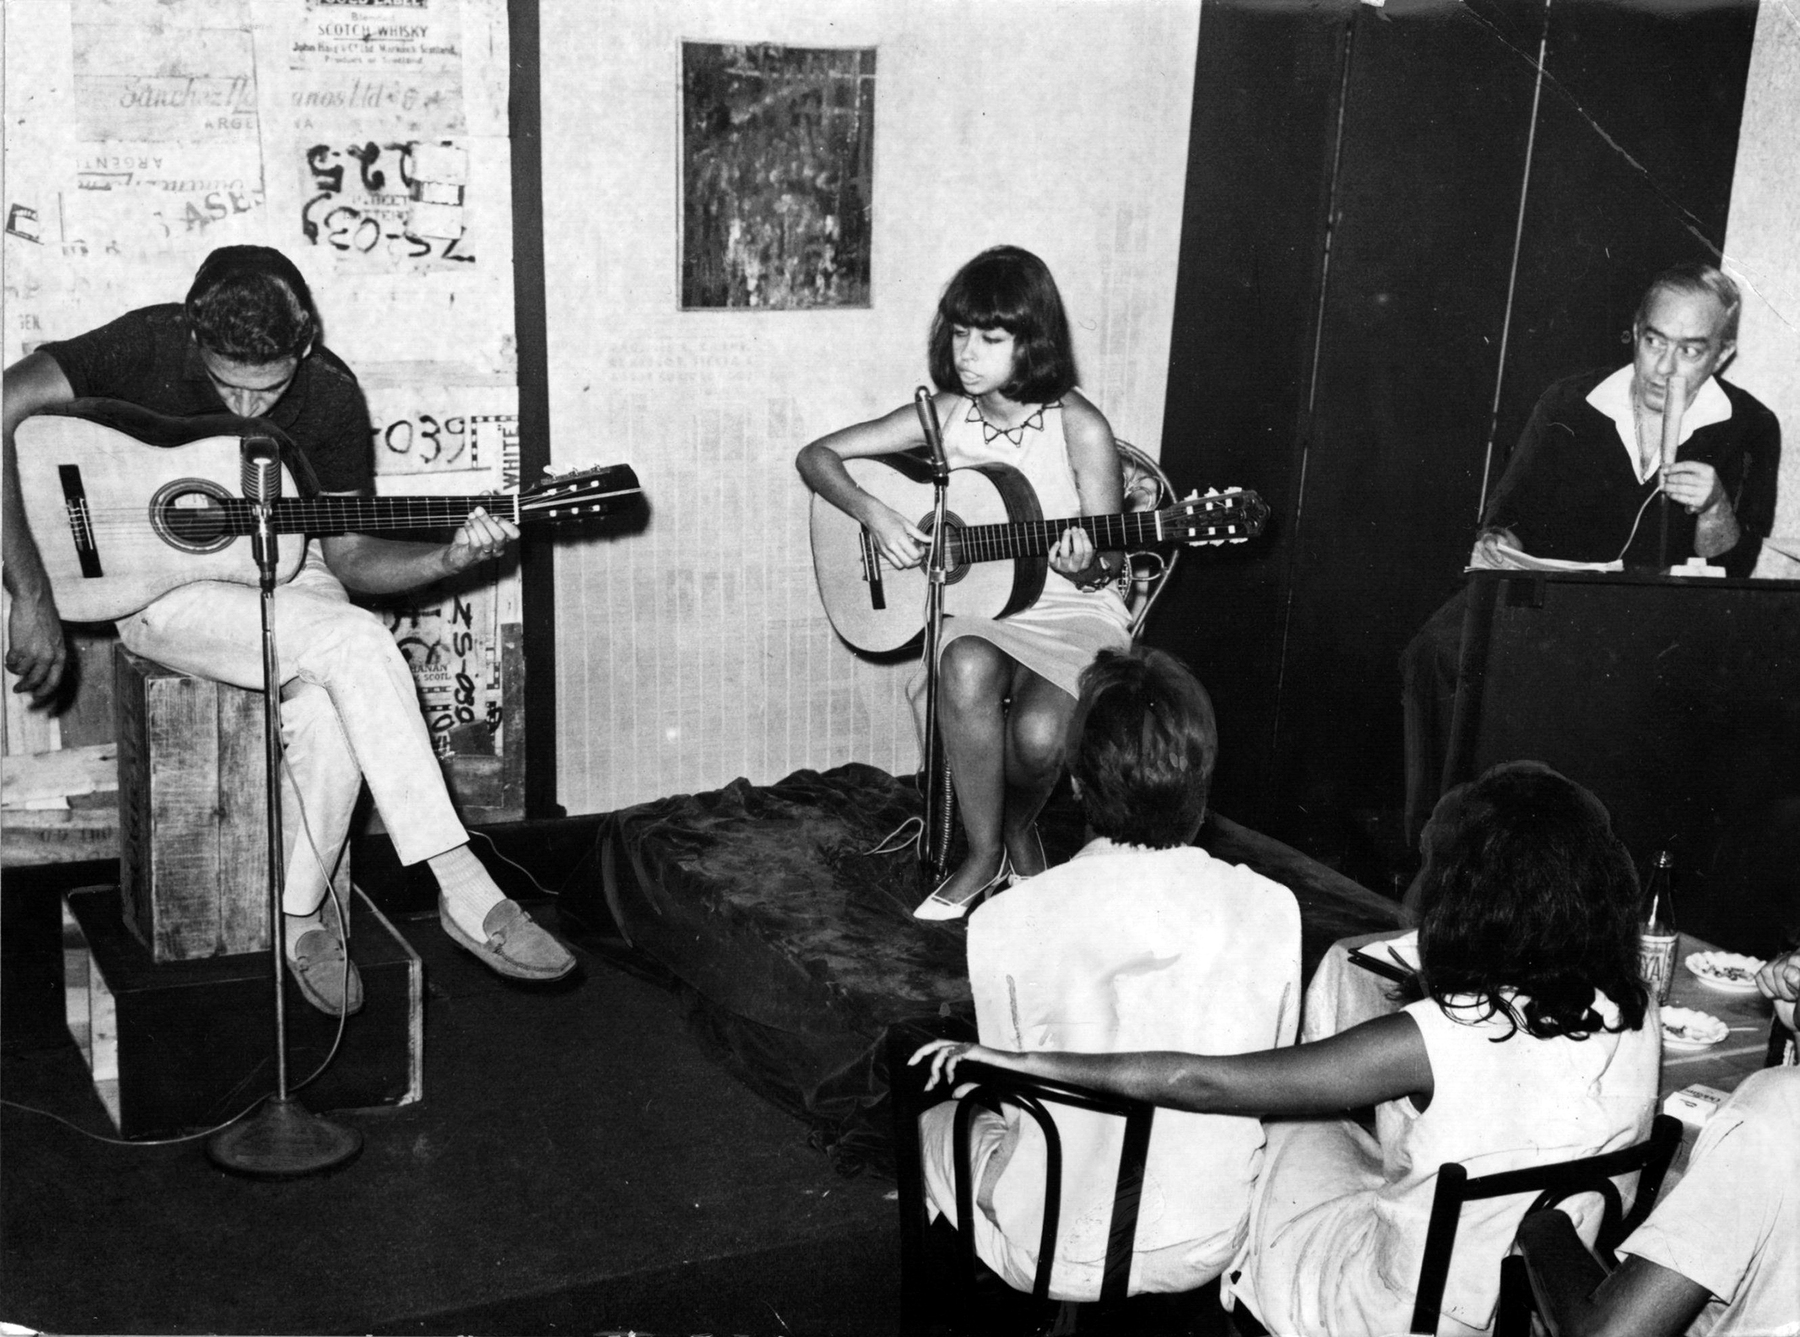 Fotografia em preto e branco. Em ambiente fechado, um homem e uma mulher, sentados, tocam violão e outro homem canta, também sentado, diante de um microfone. Na parte inferior direita, um casal sentado ao lado de uma mesa, visto de costas, observa o trio.